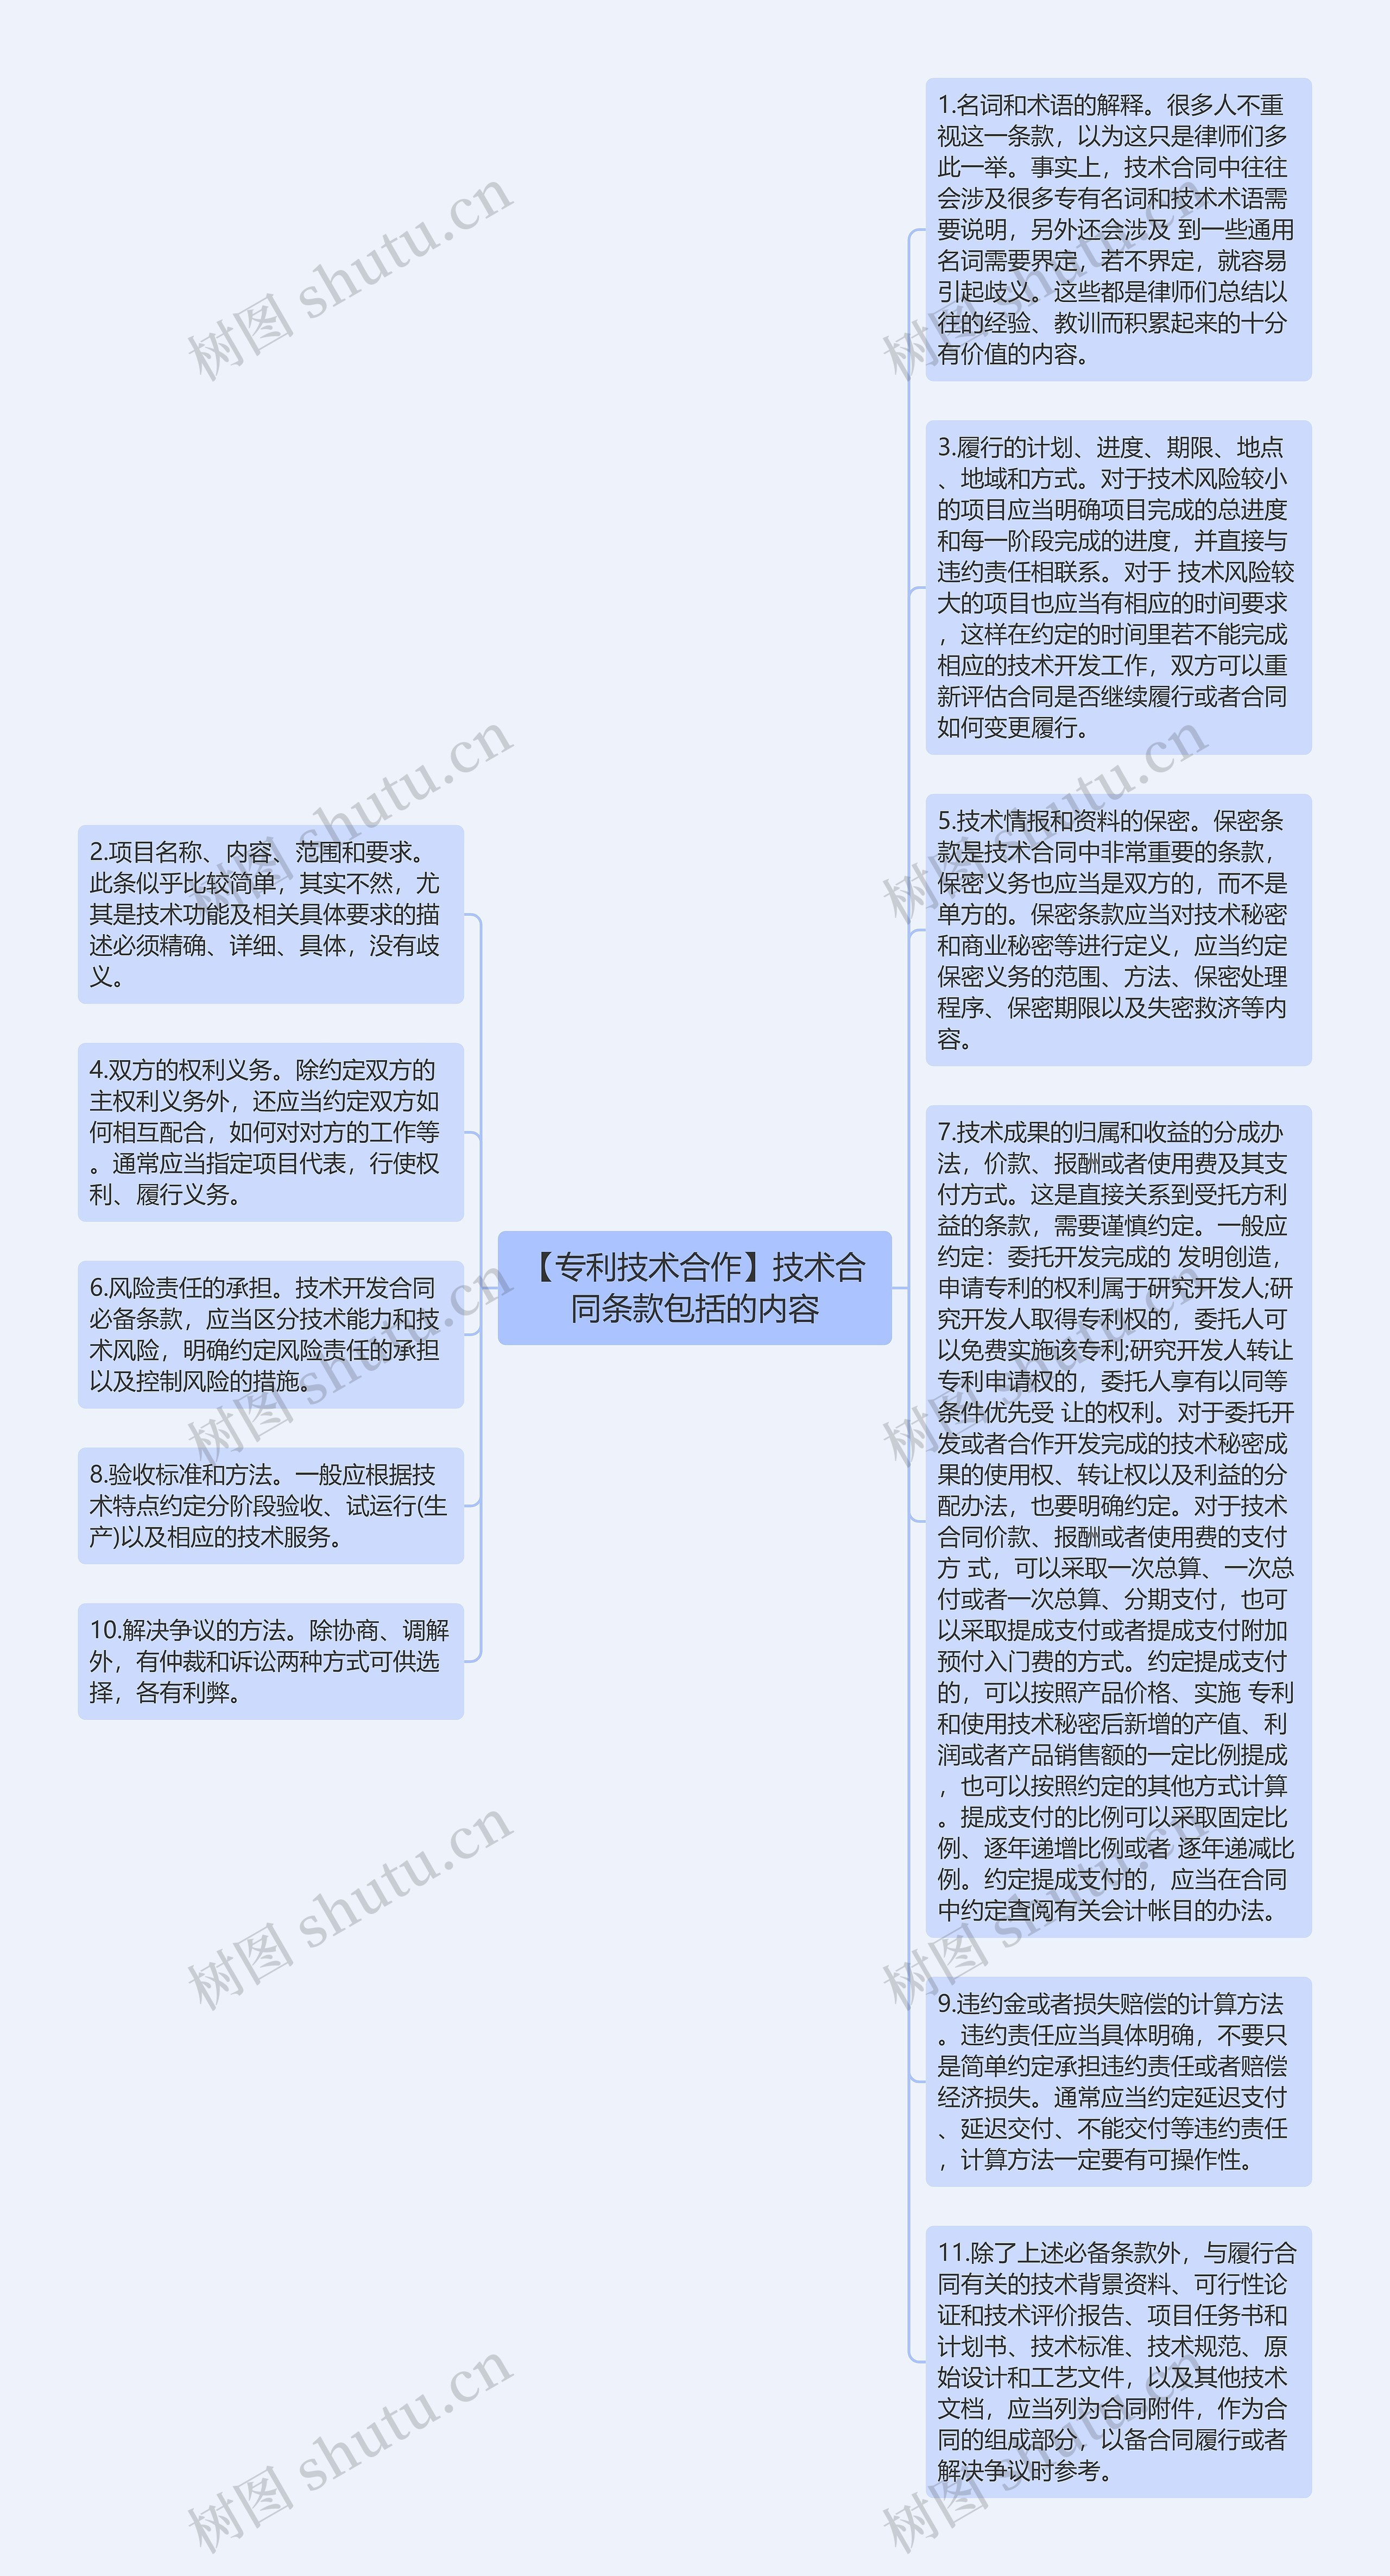 【专利技术合作】技术合同条款包括的内容思维导图